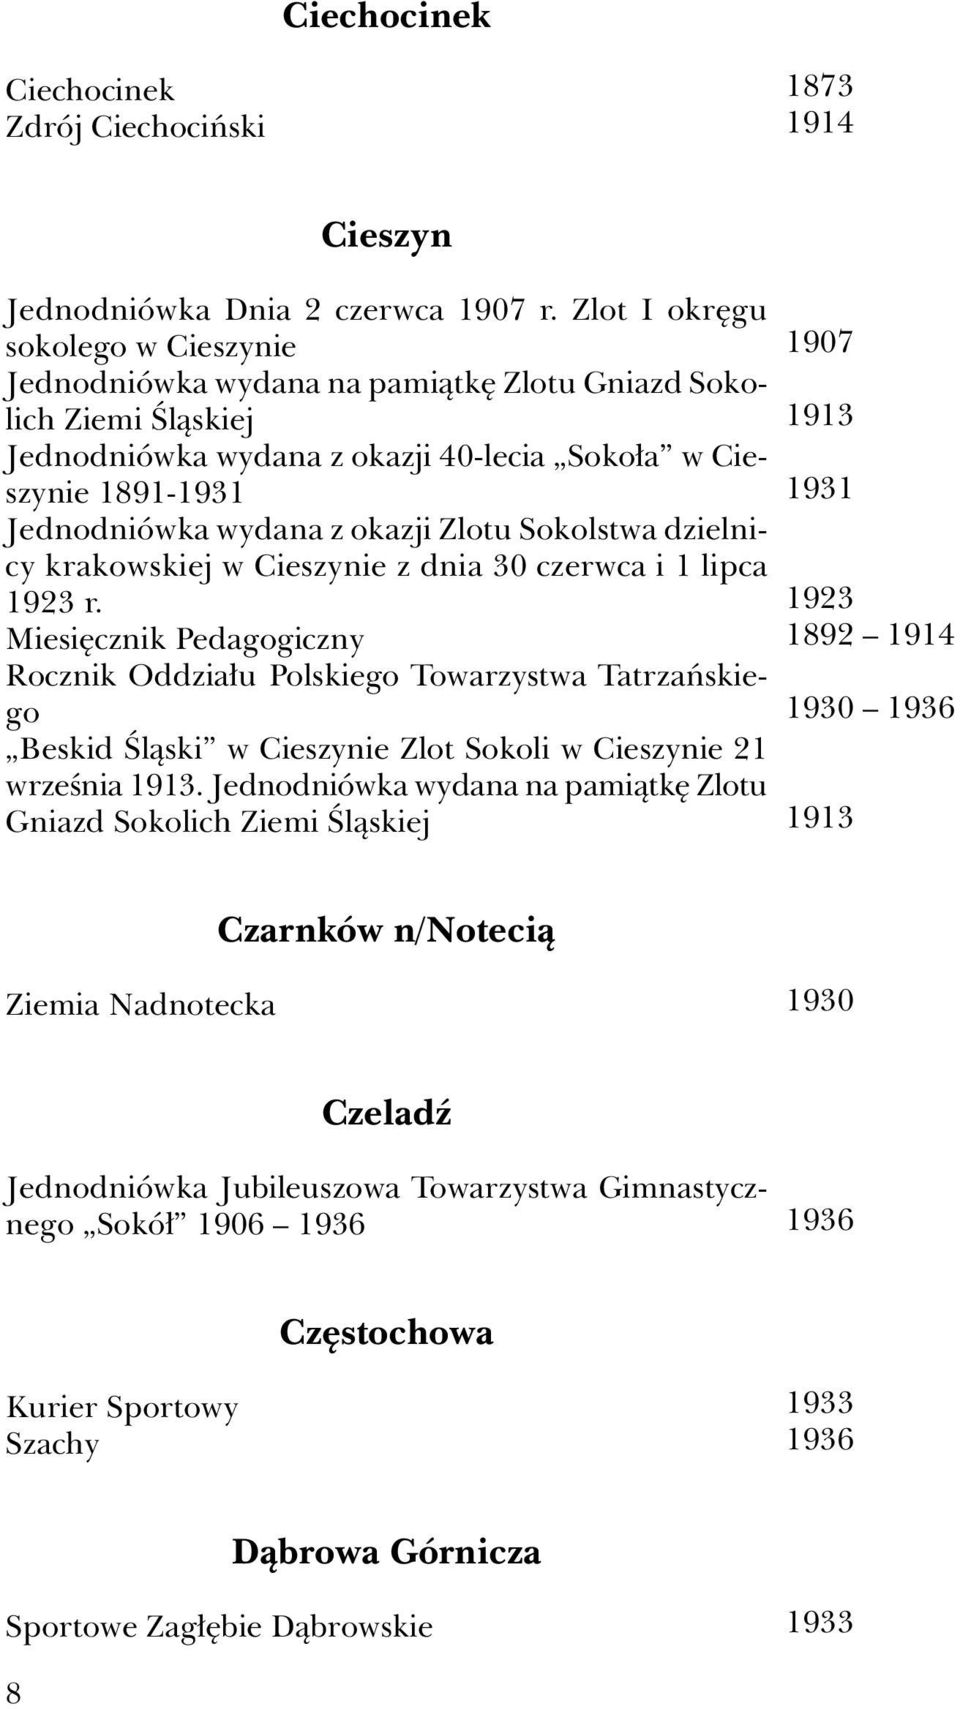 Zlotu Sokolstwa dzielnicy krakowskiej w Cieszynie z dnia 30 czerwca i 1 lipca 1923 r.